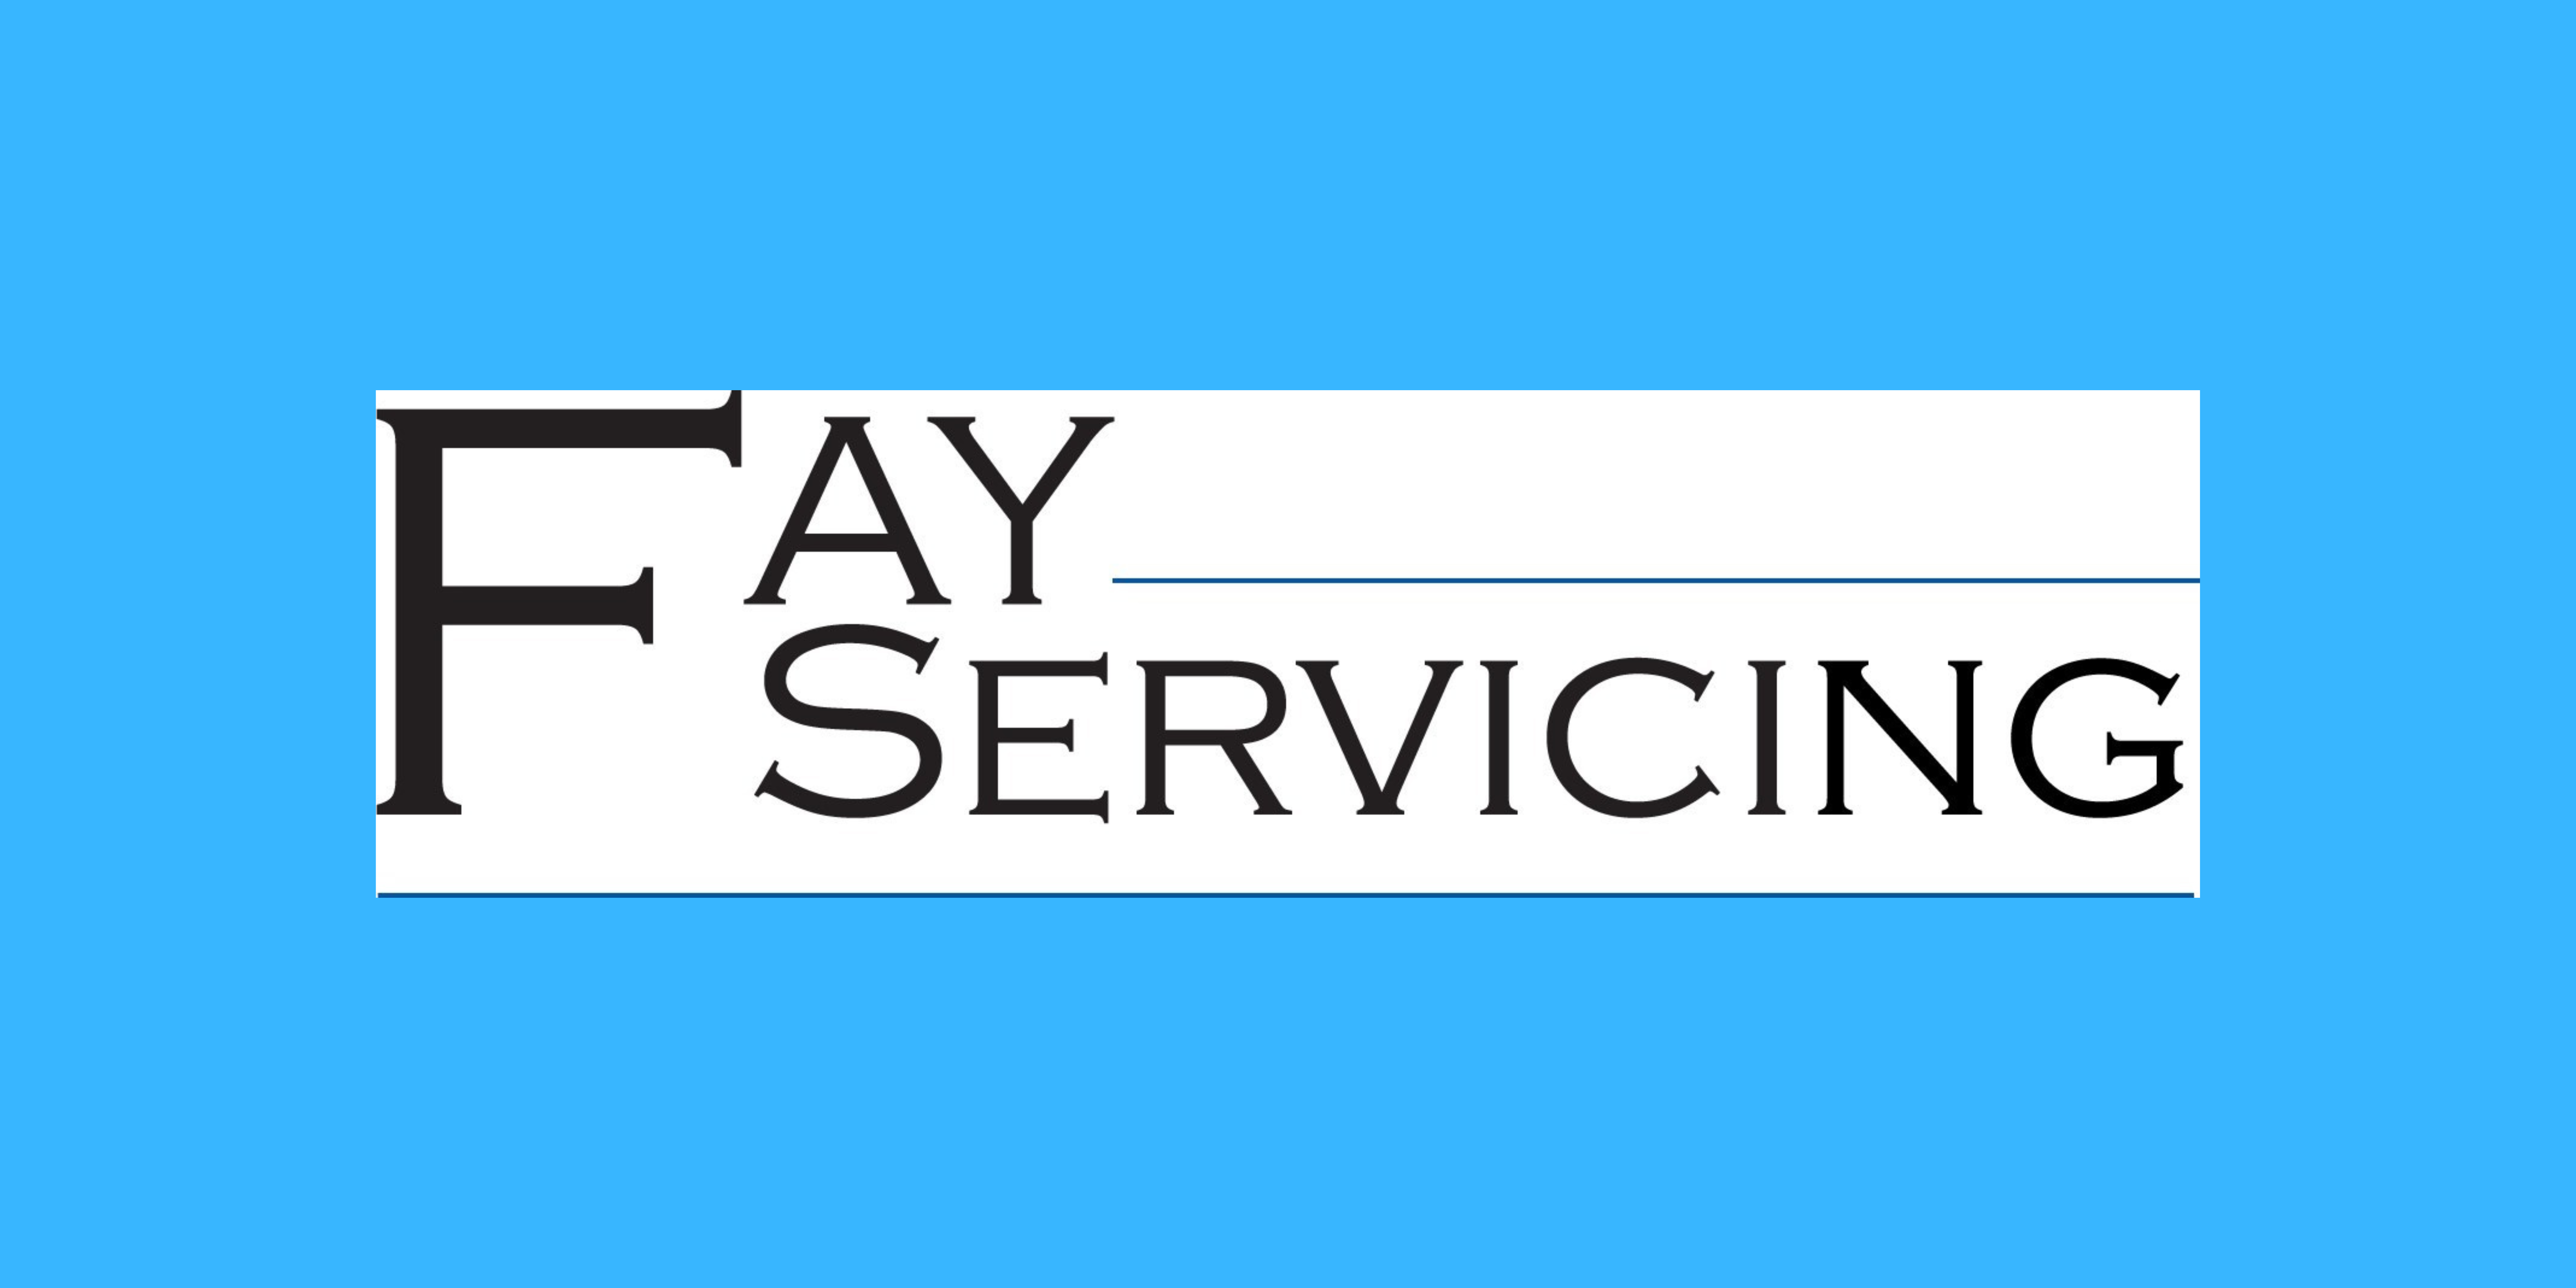 Dallas Vit Named CIO Of Fay Servicing